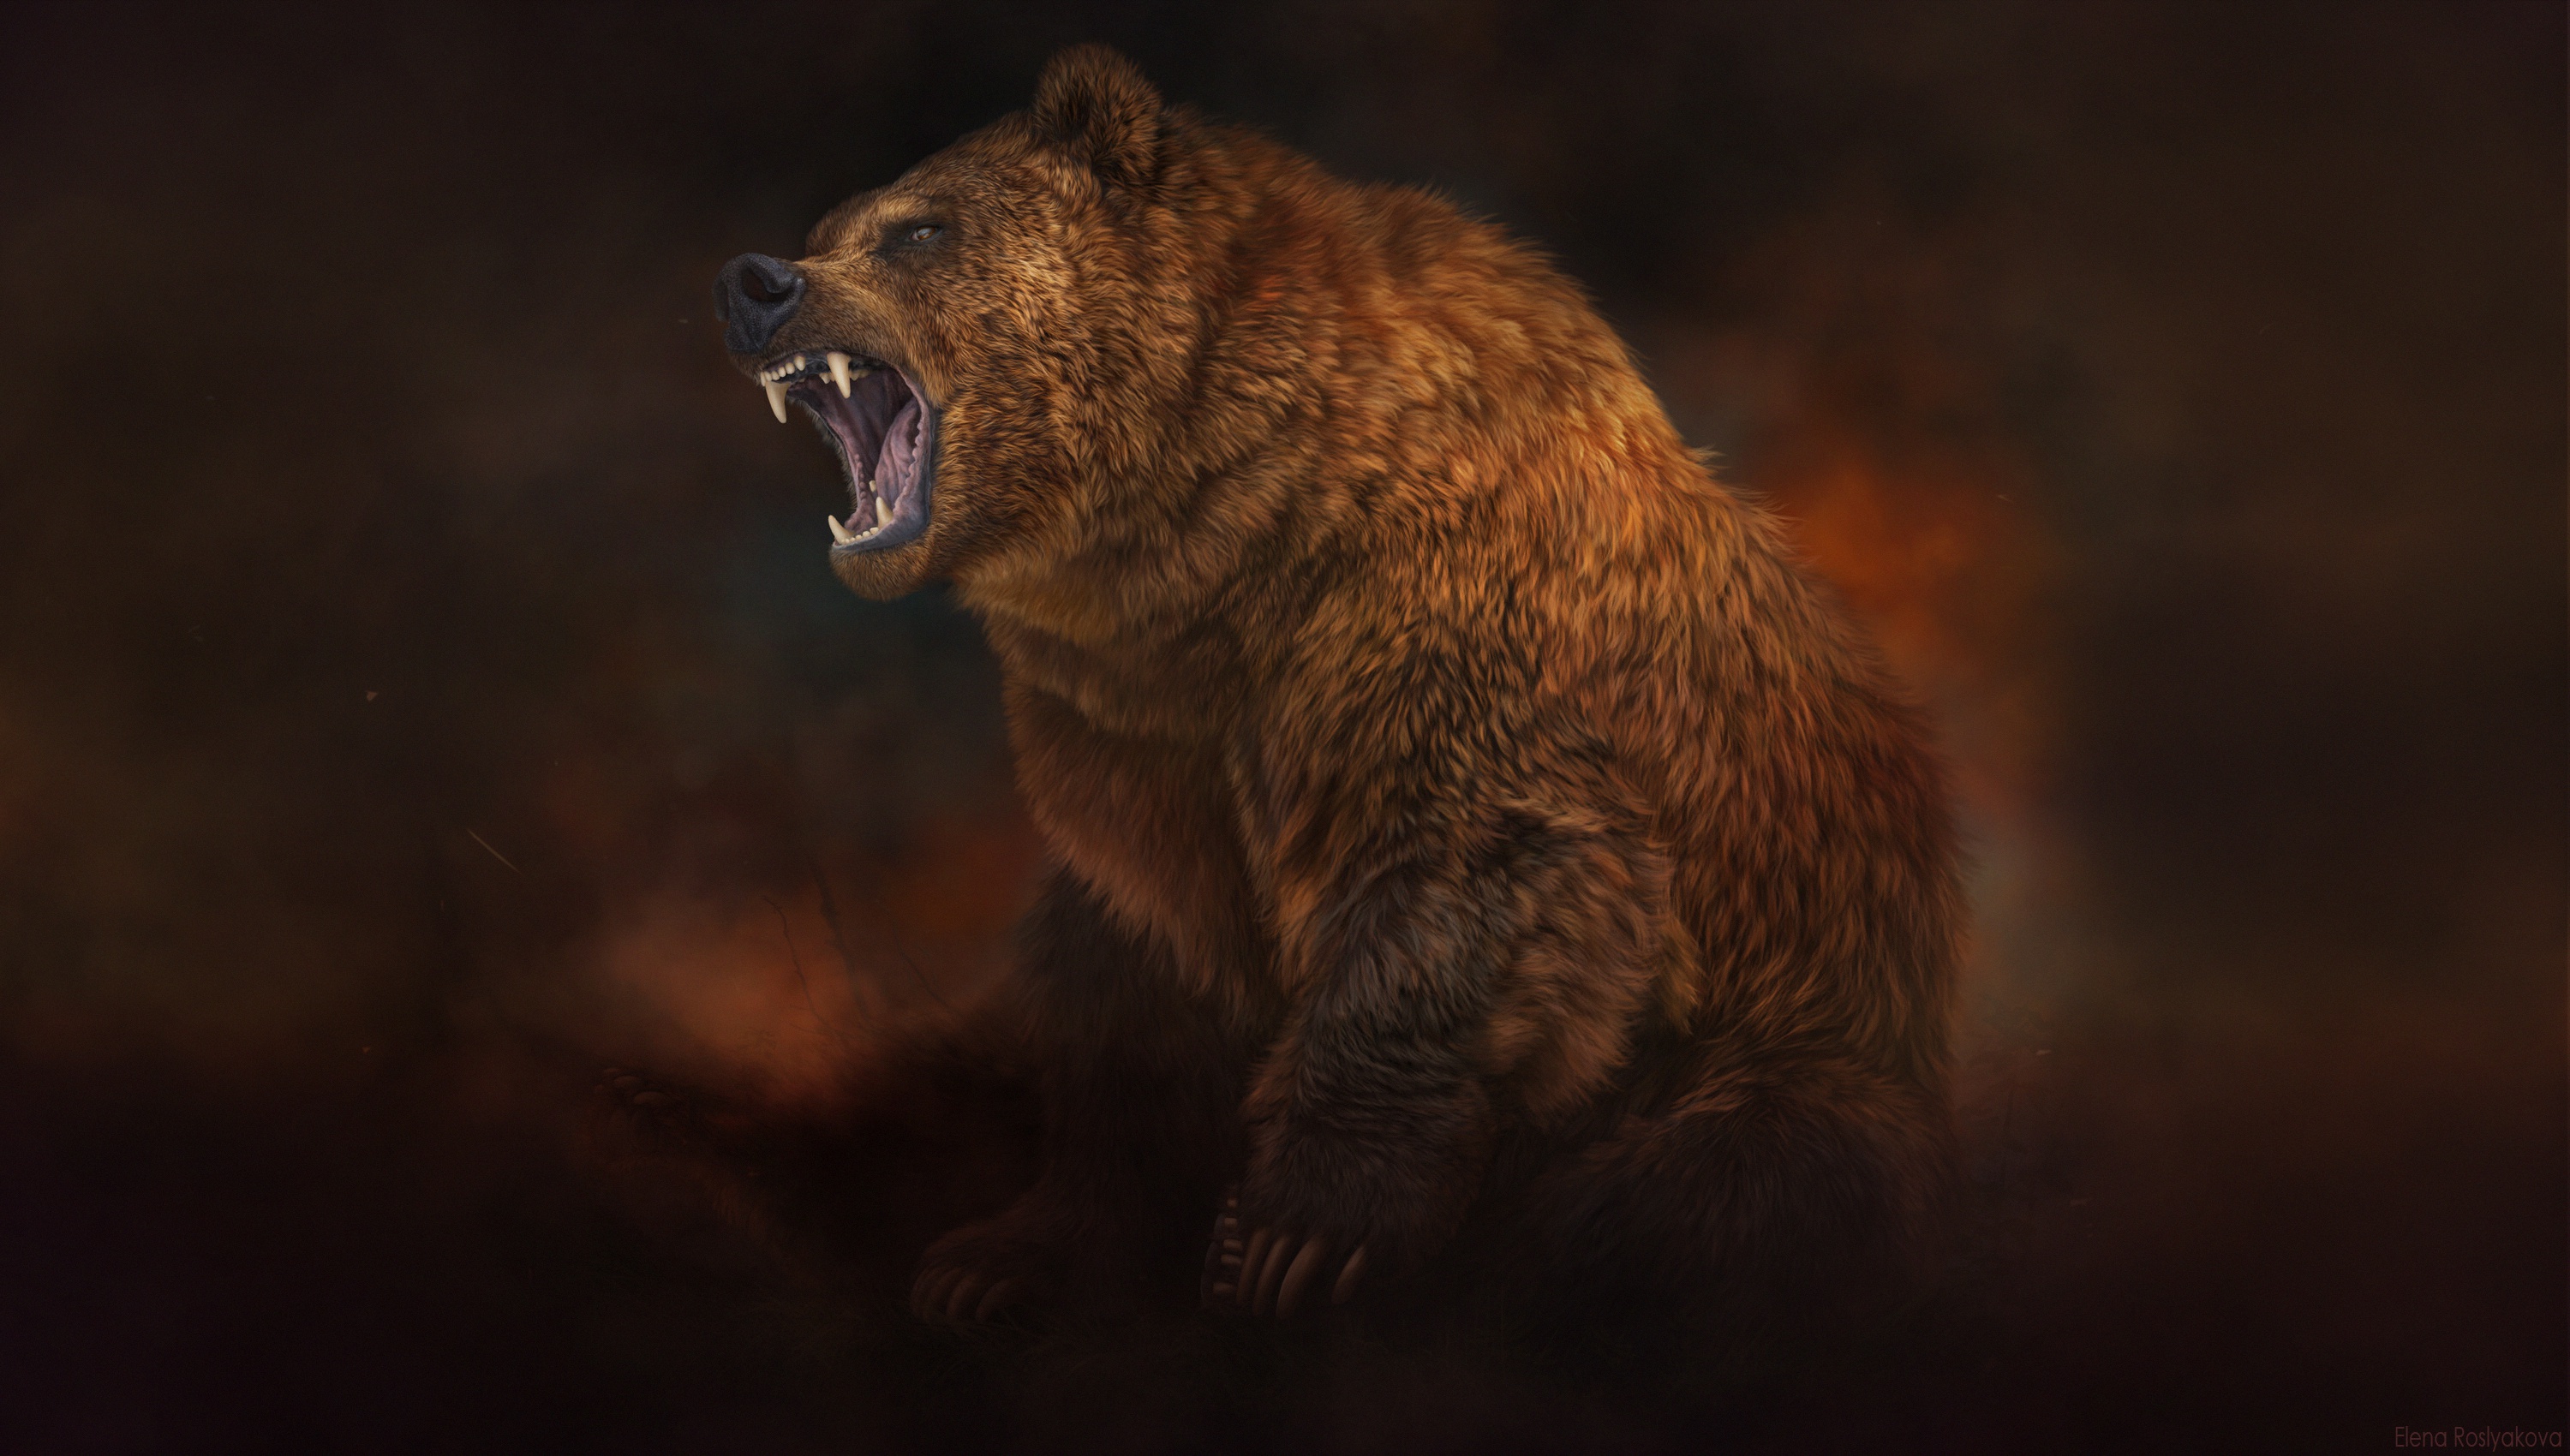 Artwork Fantasy Art Bears Animals Elena Roslyakova Dark Background 3000x1700